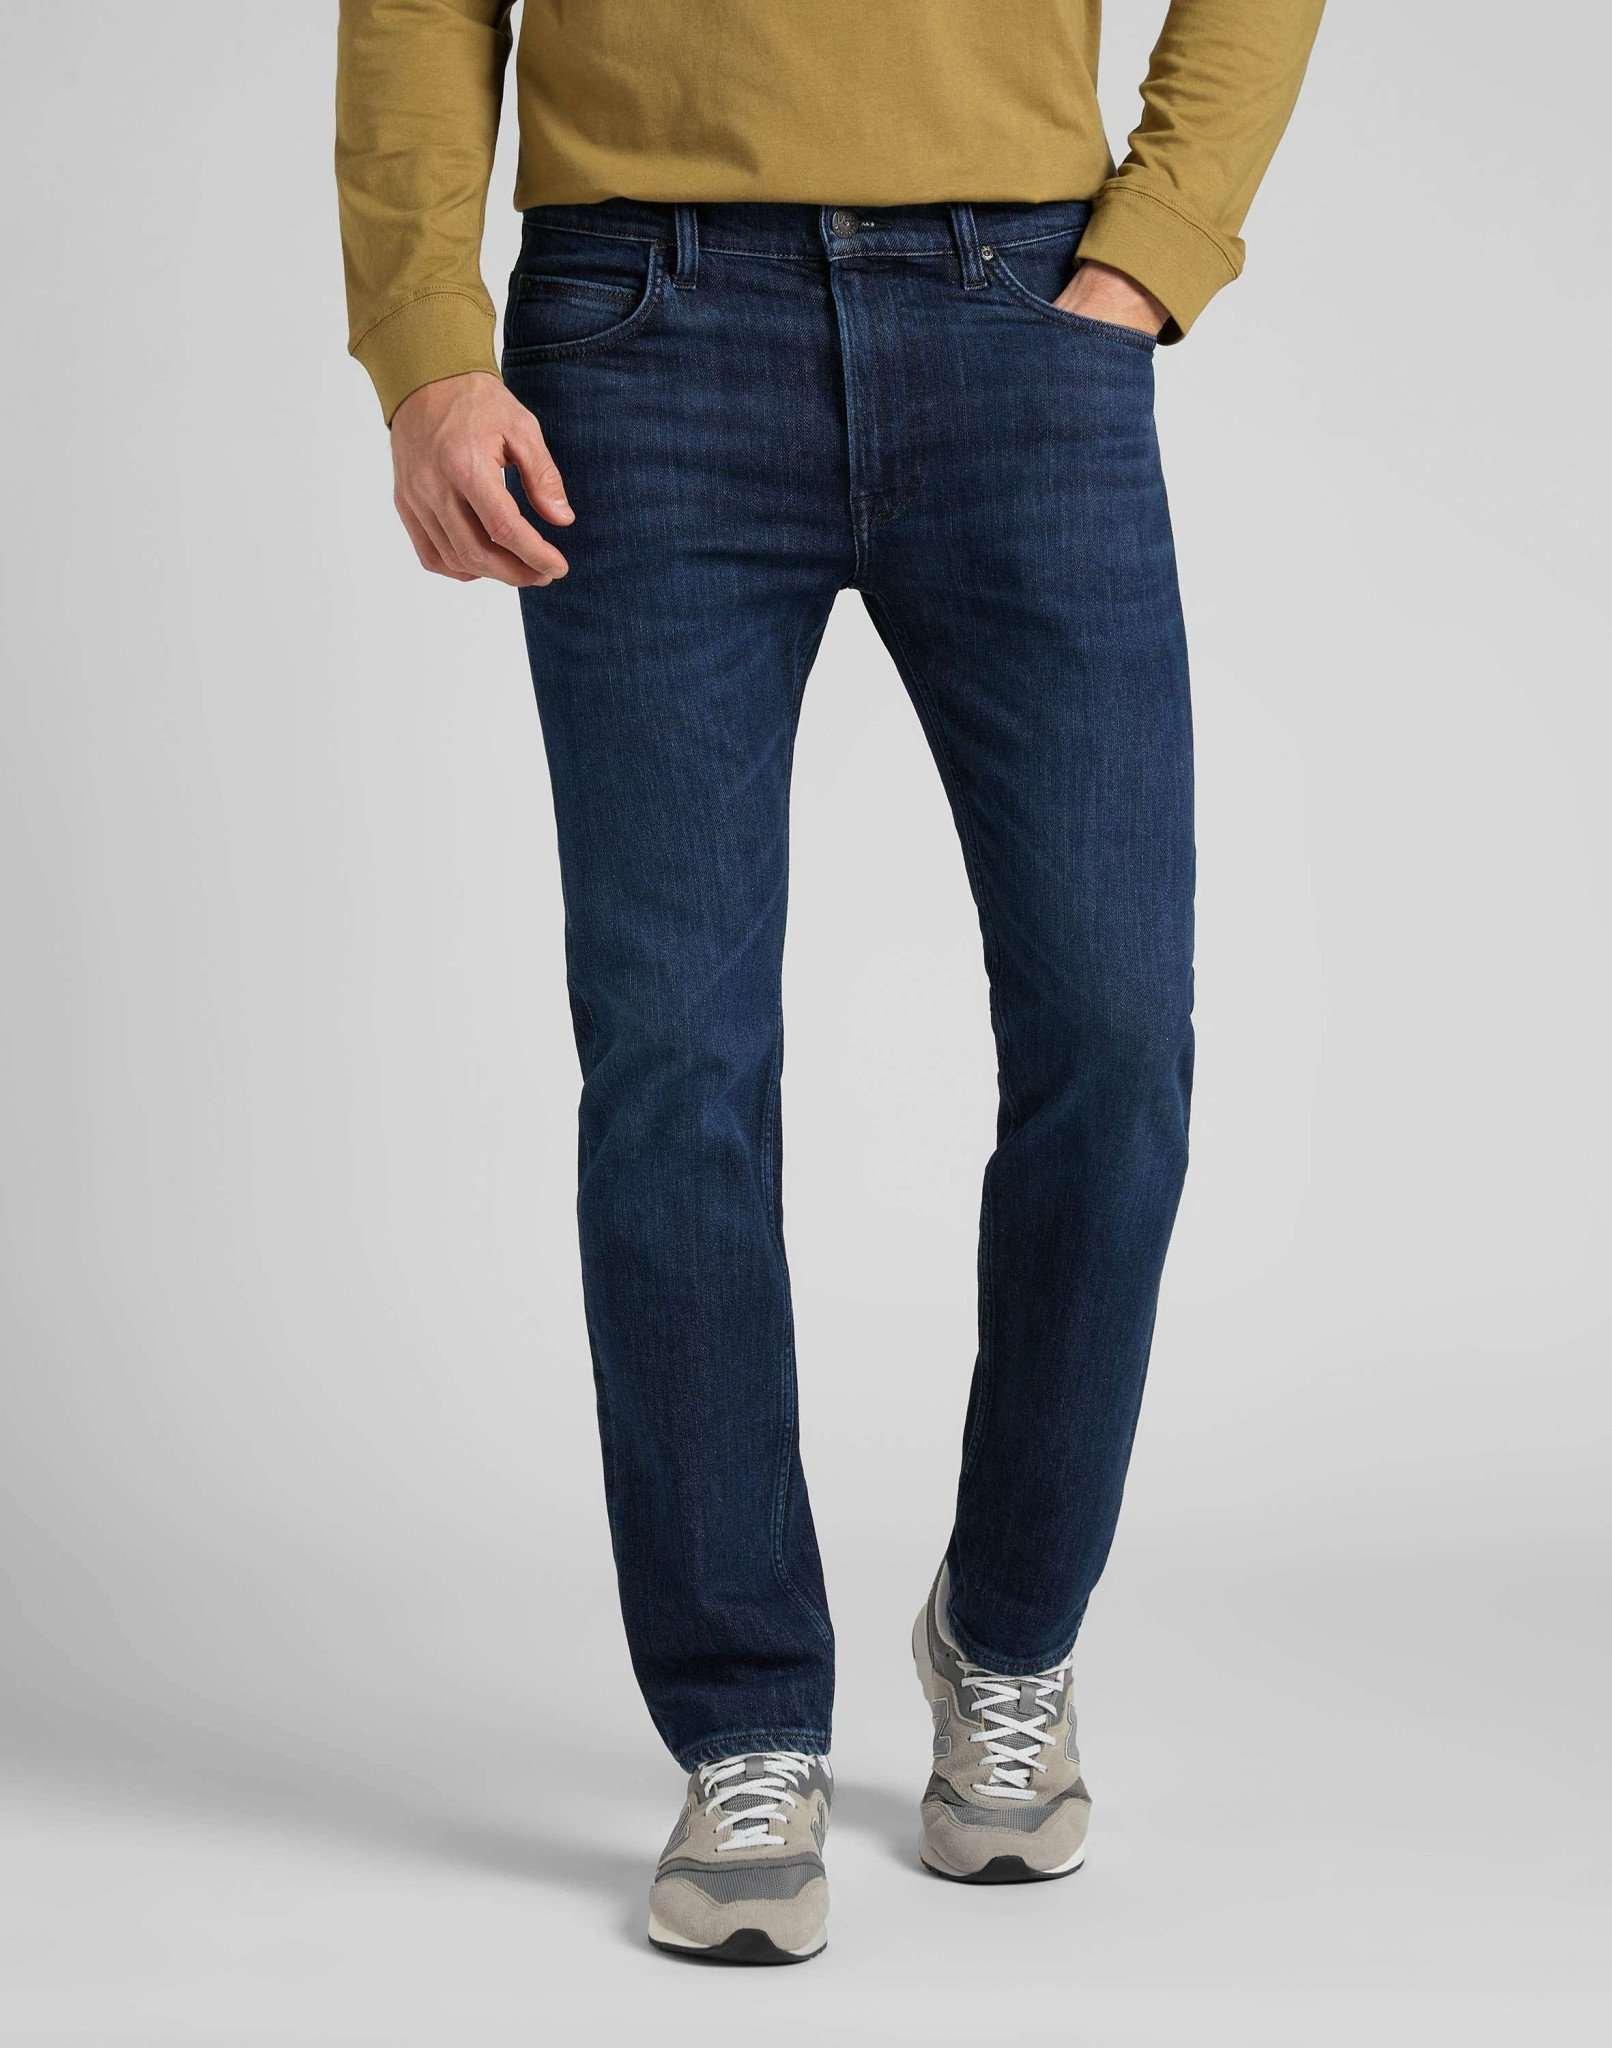 Jeans Slim Fit Rider Damen Blau Denim L30/W30 von Lee